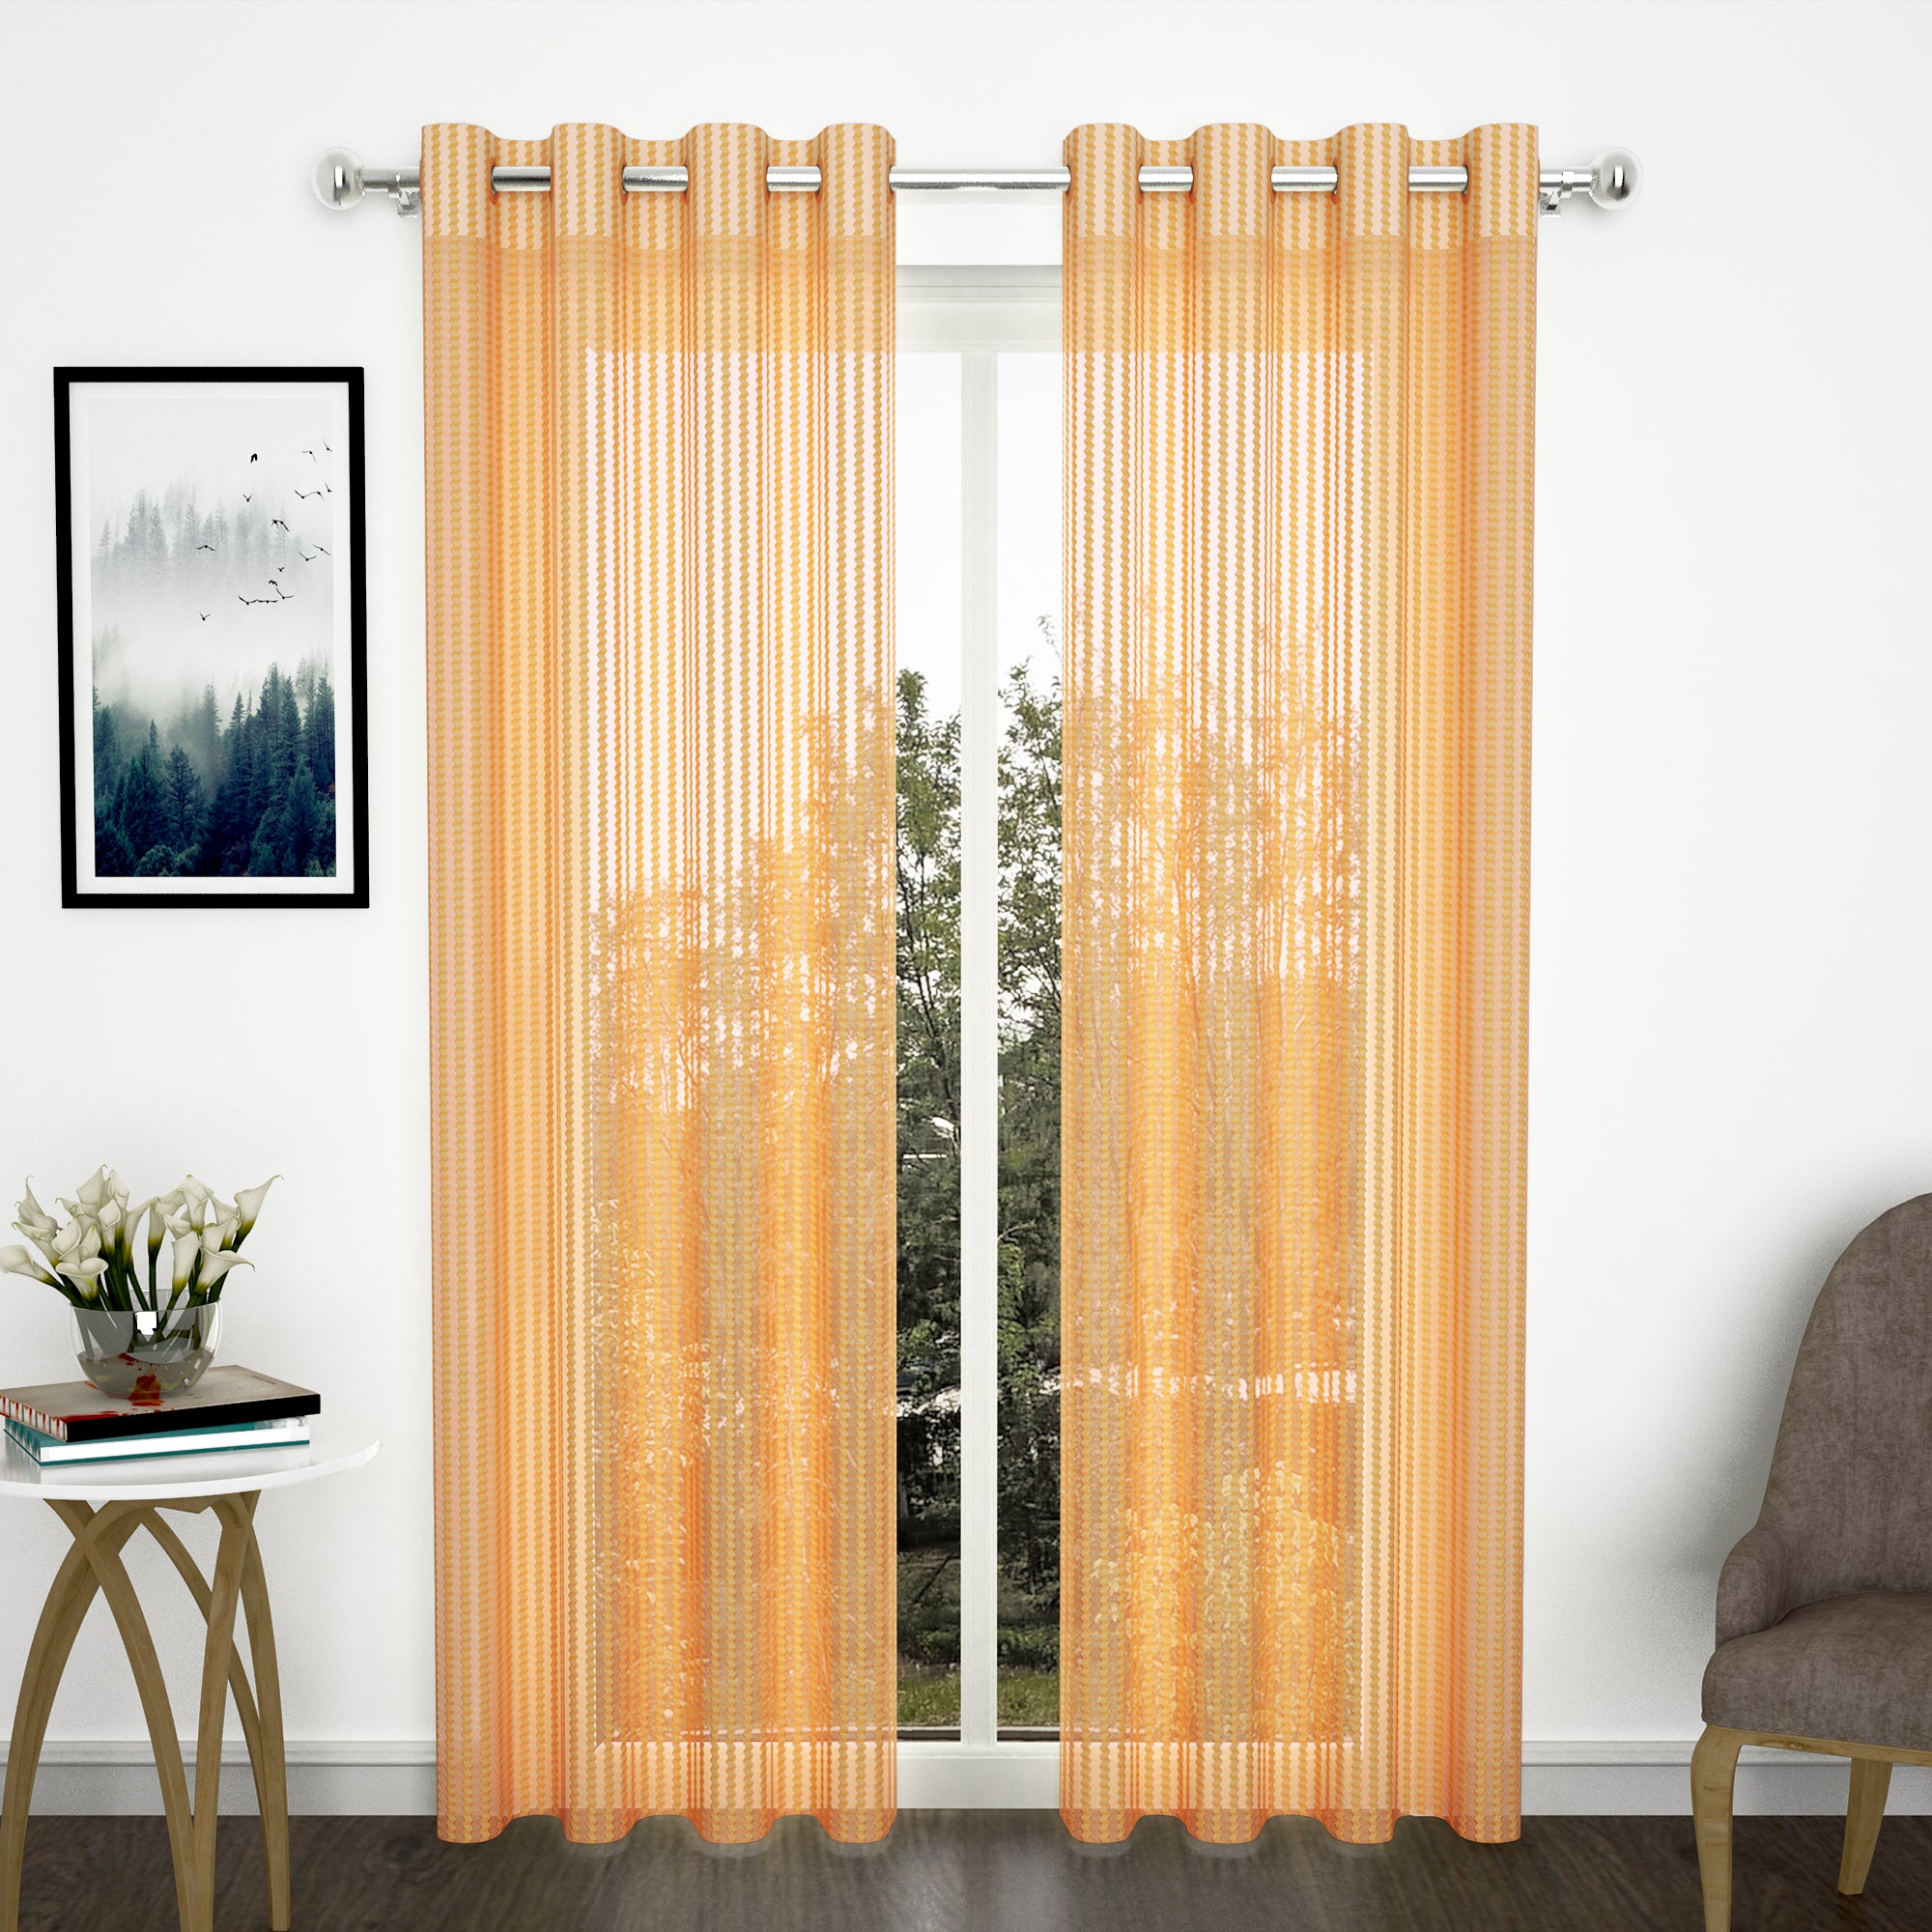 2 Pcs Orange Sheer Net Polyester Window/Door Curtains